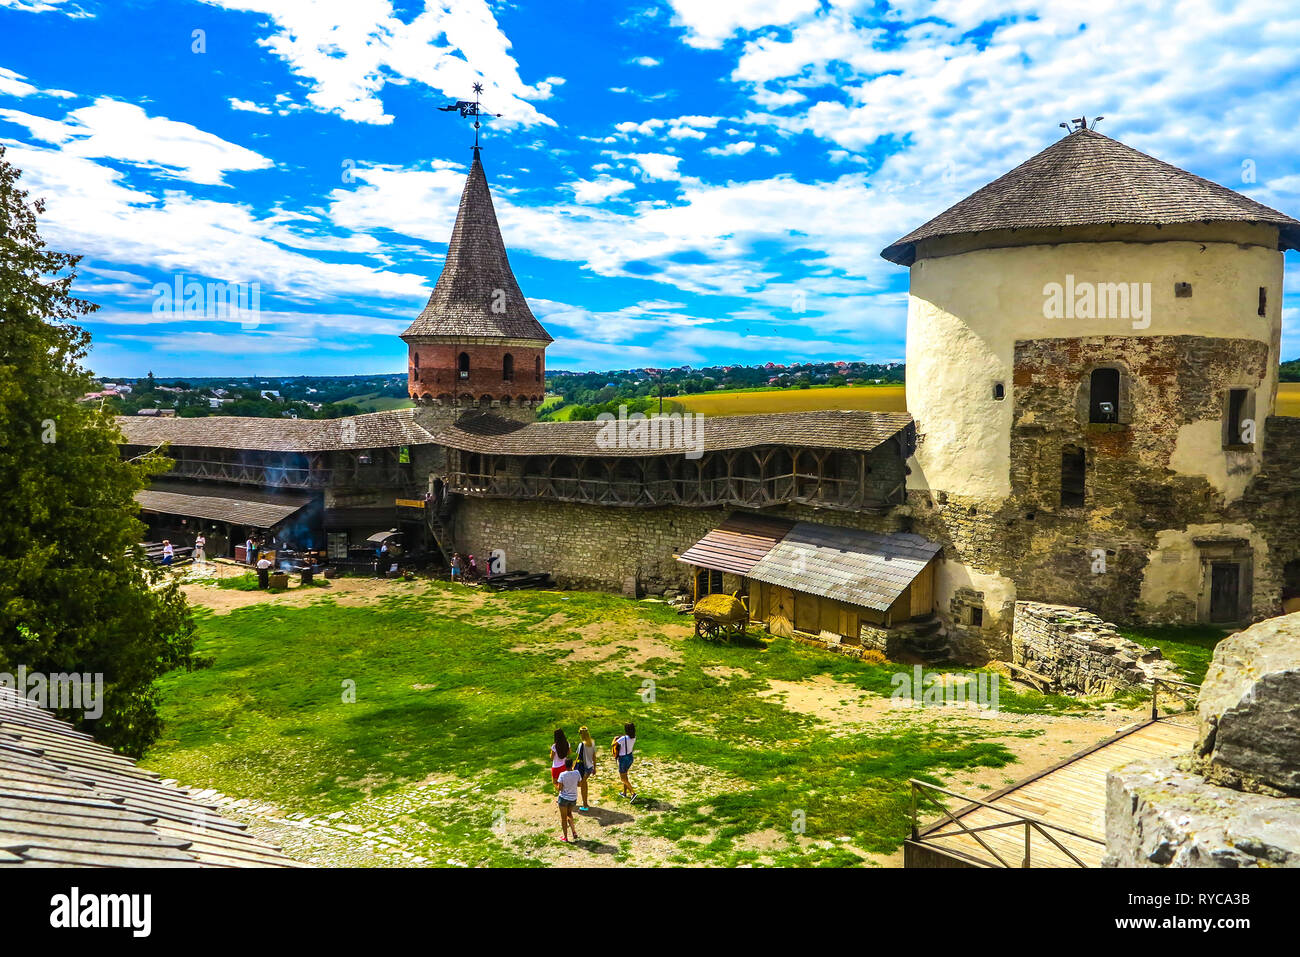 Kamianets Podilskyi antica fortezza sul cortile del castello con torri di avvistamento e sfondo con cielo nuvoloso Foto Stock